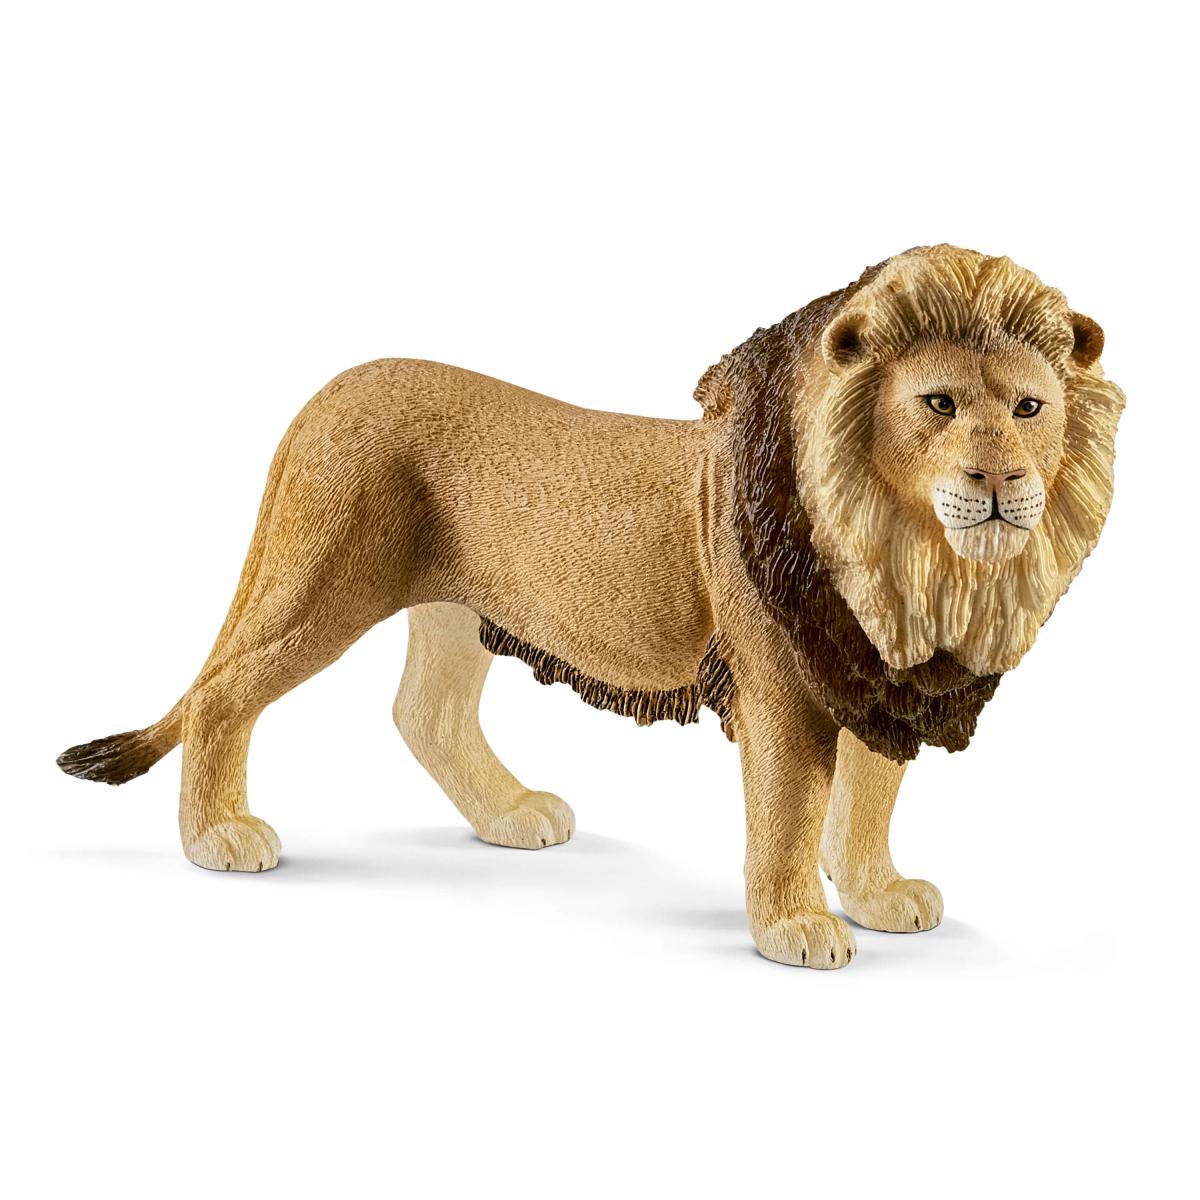 Lion 5" Figure